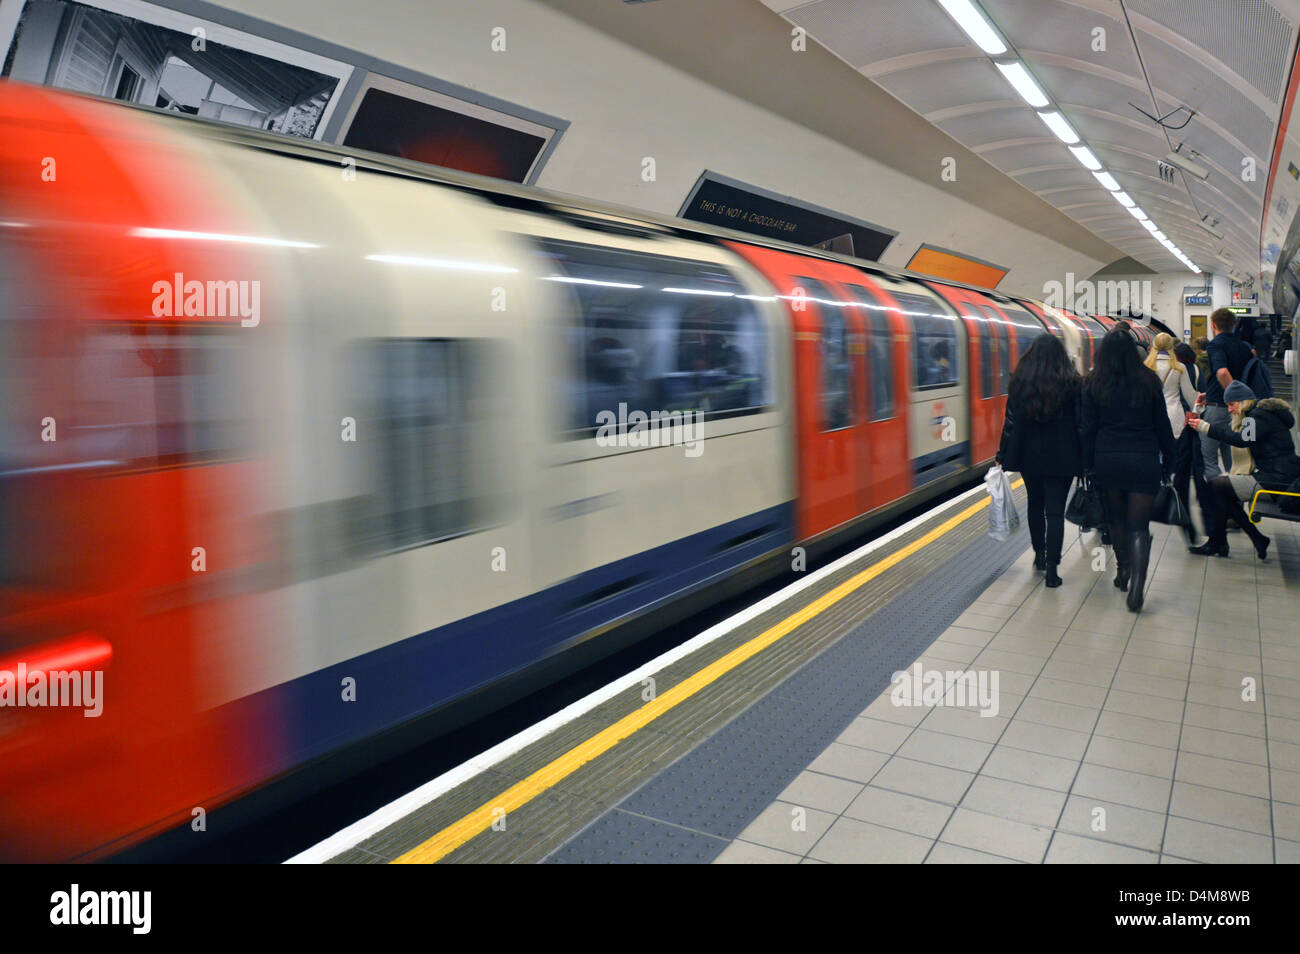 Die Londoner U-Bahn Central Line U-Bahn Abfahrt Bahnhof Menschen auf der Plattform mit Motion blur Shepherds Bush West London England Großbritannien Stockfoto